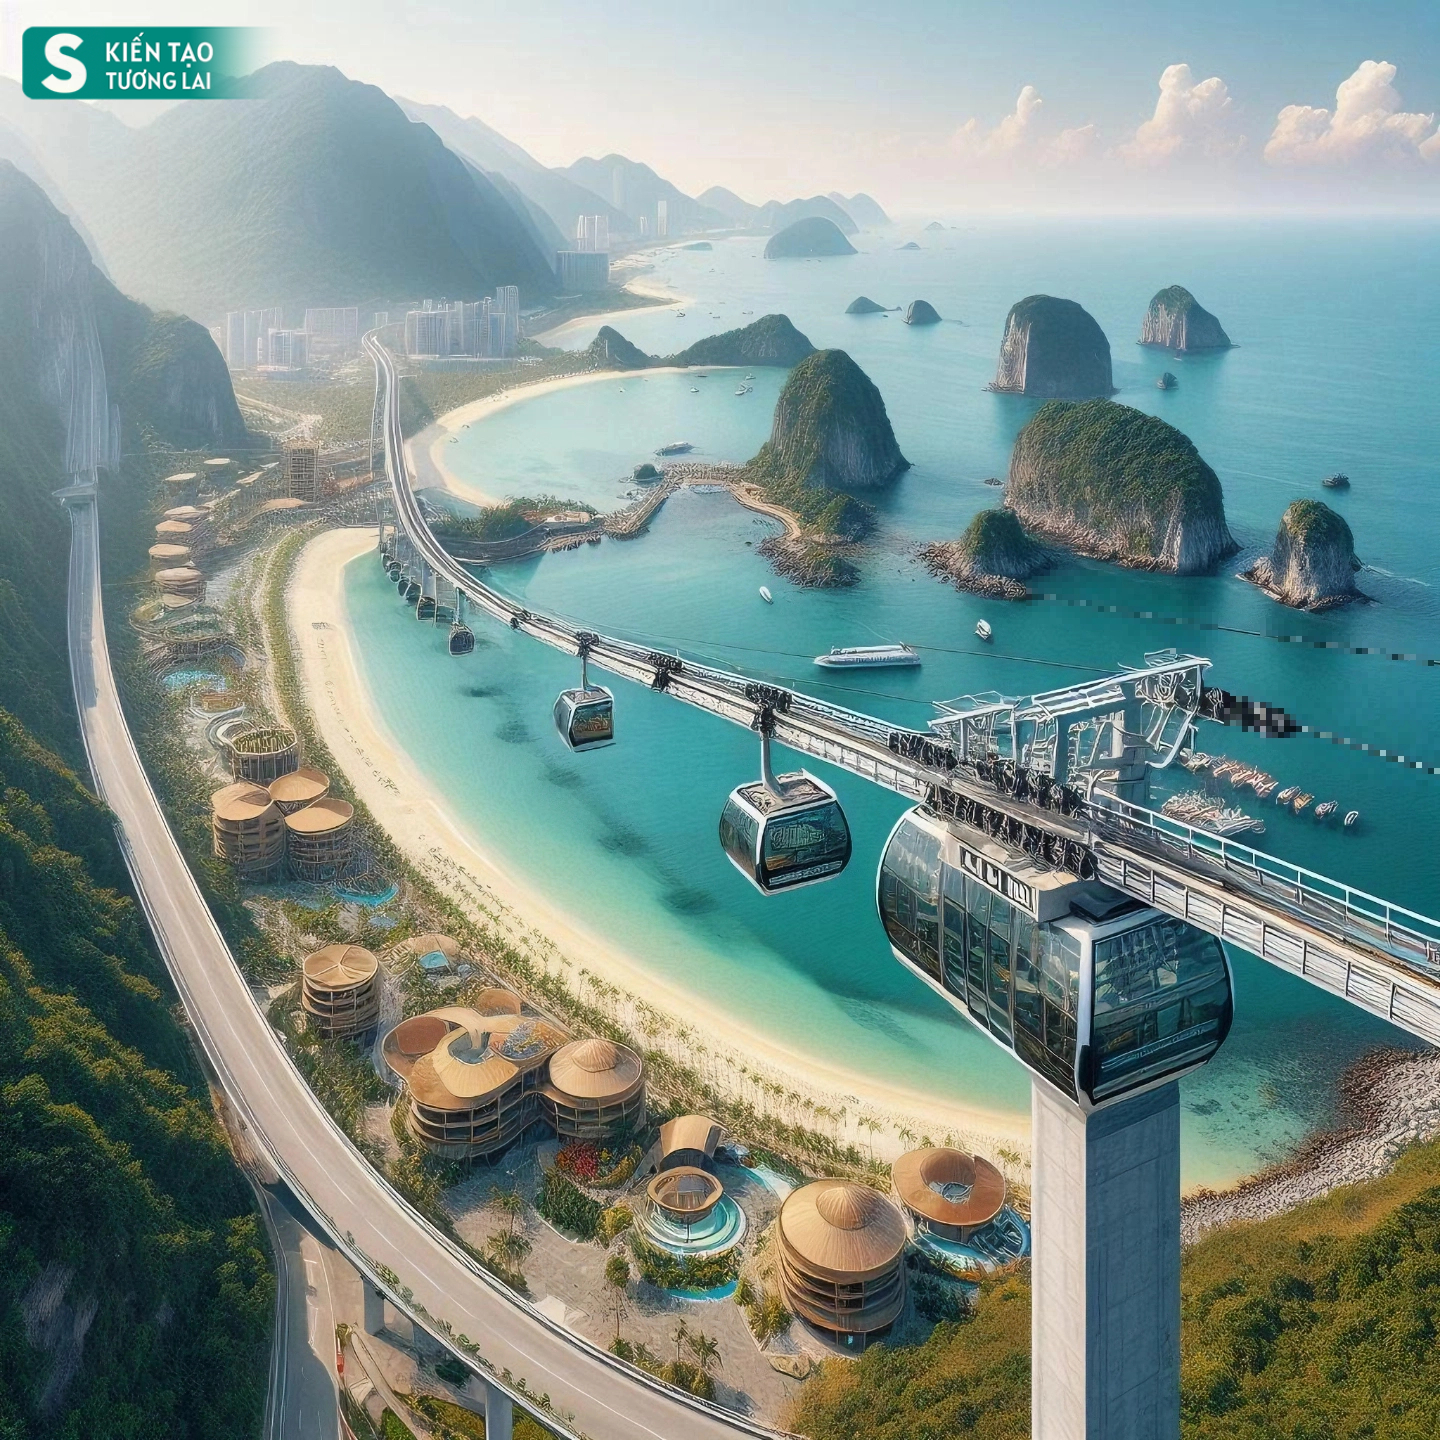 Thành phố duy nhất ở Việt Nam giáp Trung Quốc có biển đẹp, tương lai có sân bay taxi, đường sắt hiện đại- Ảnh 11.